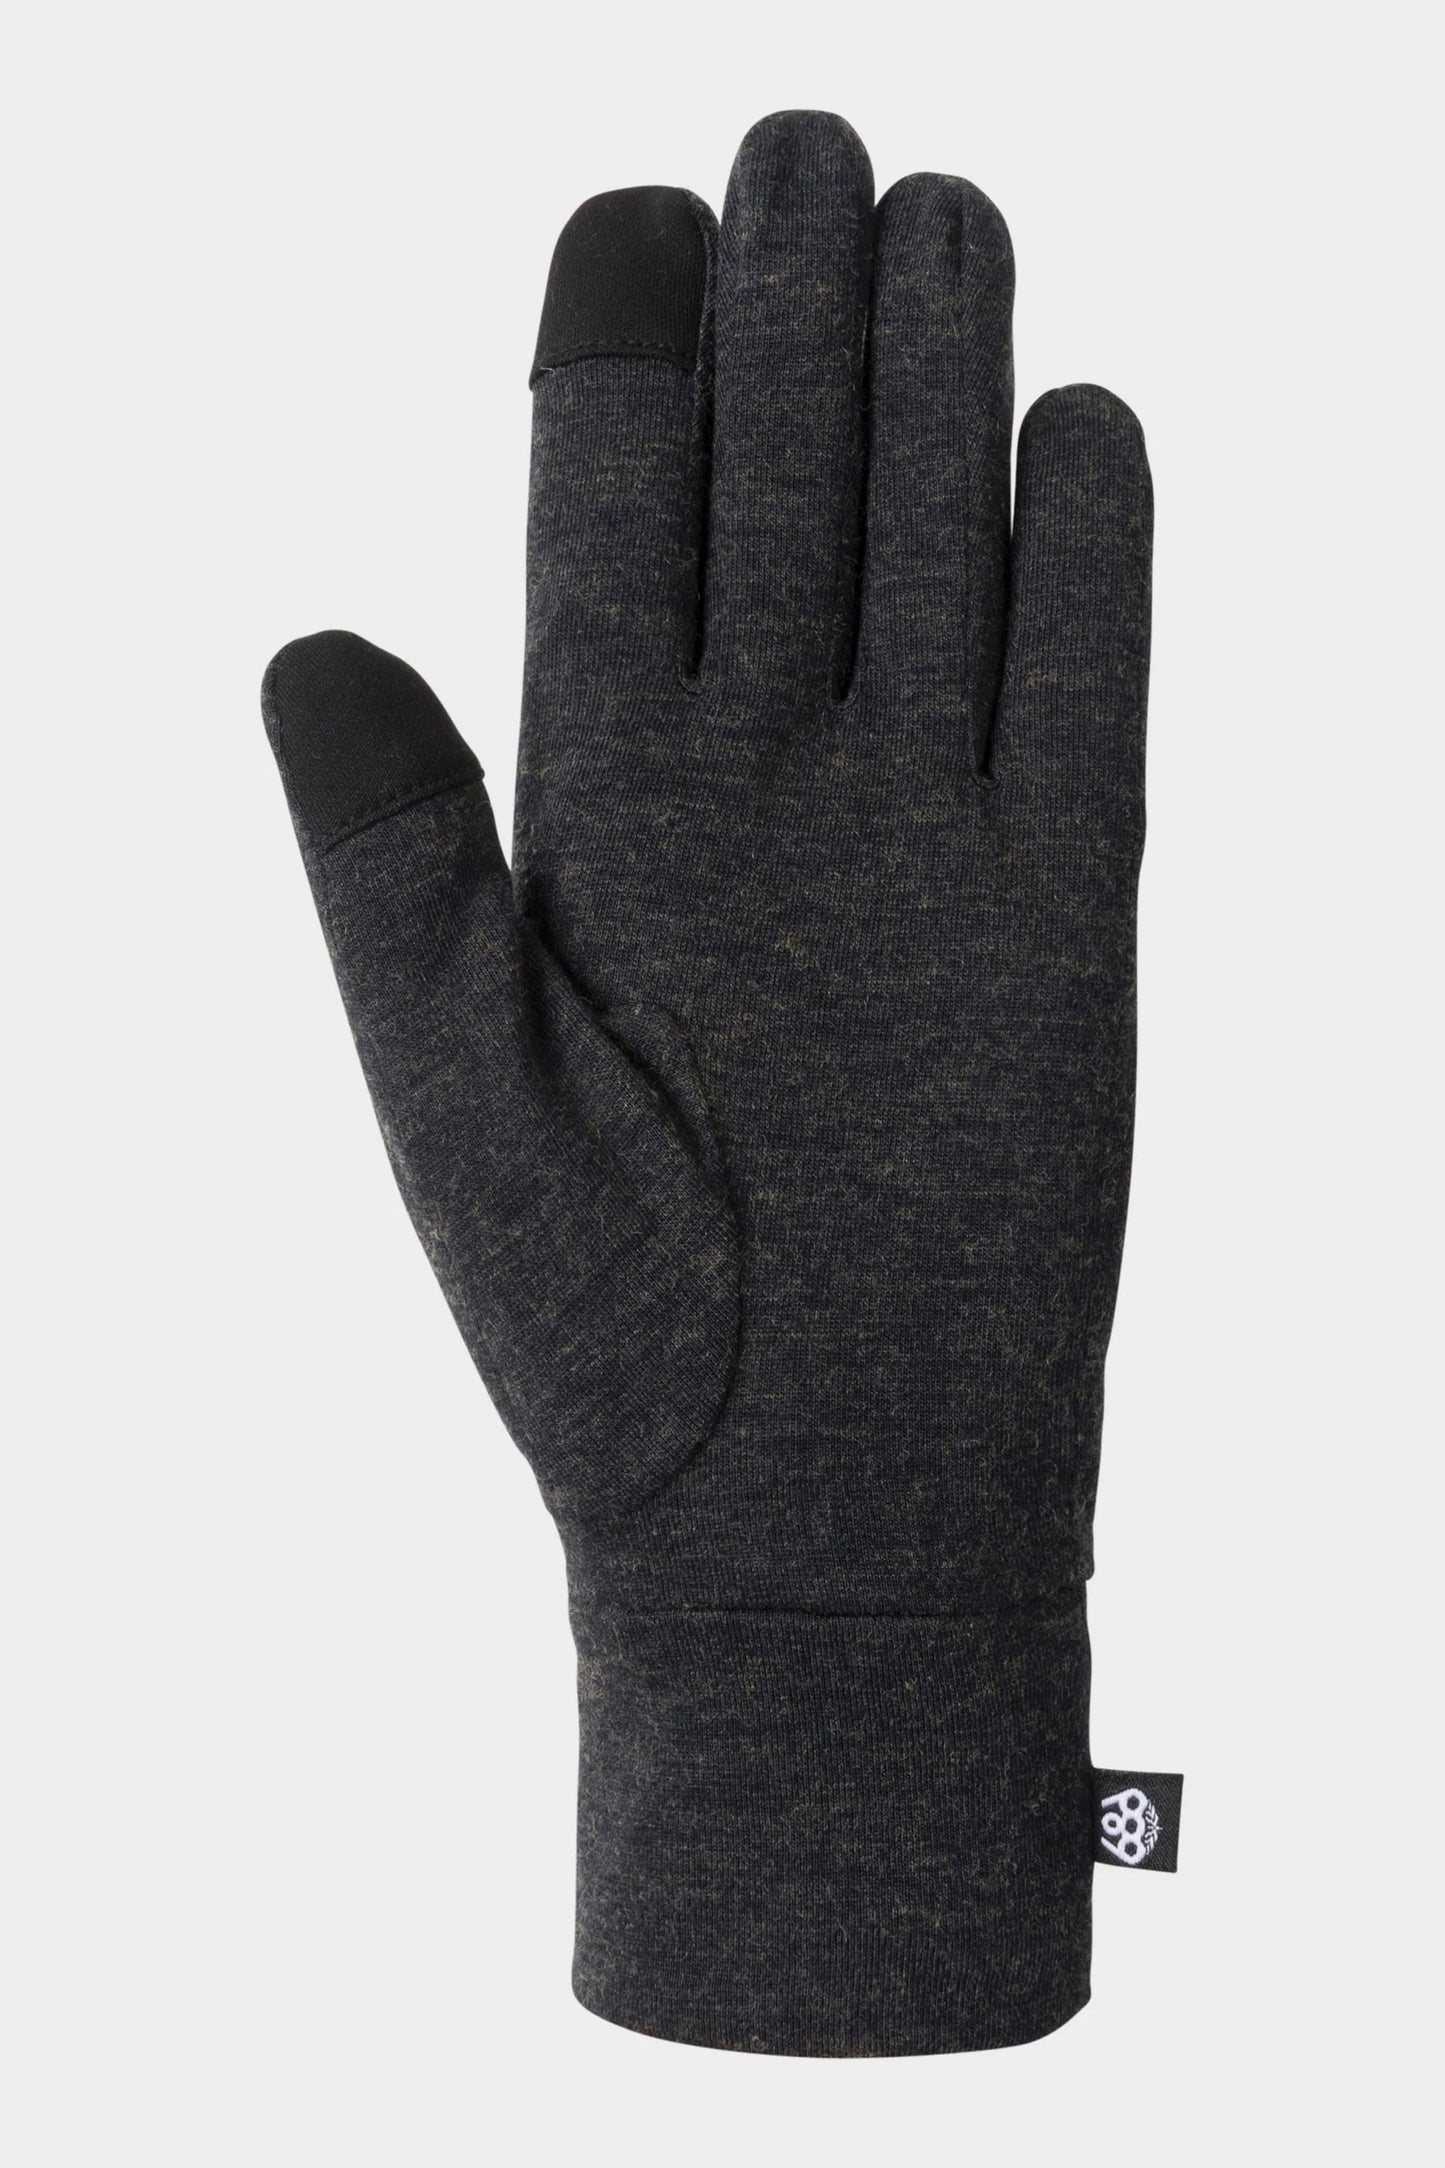 686 Men's GORE-TEX SMARTY 3-N-1 Gauntlet Glove - Bison